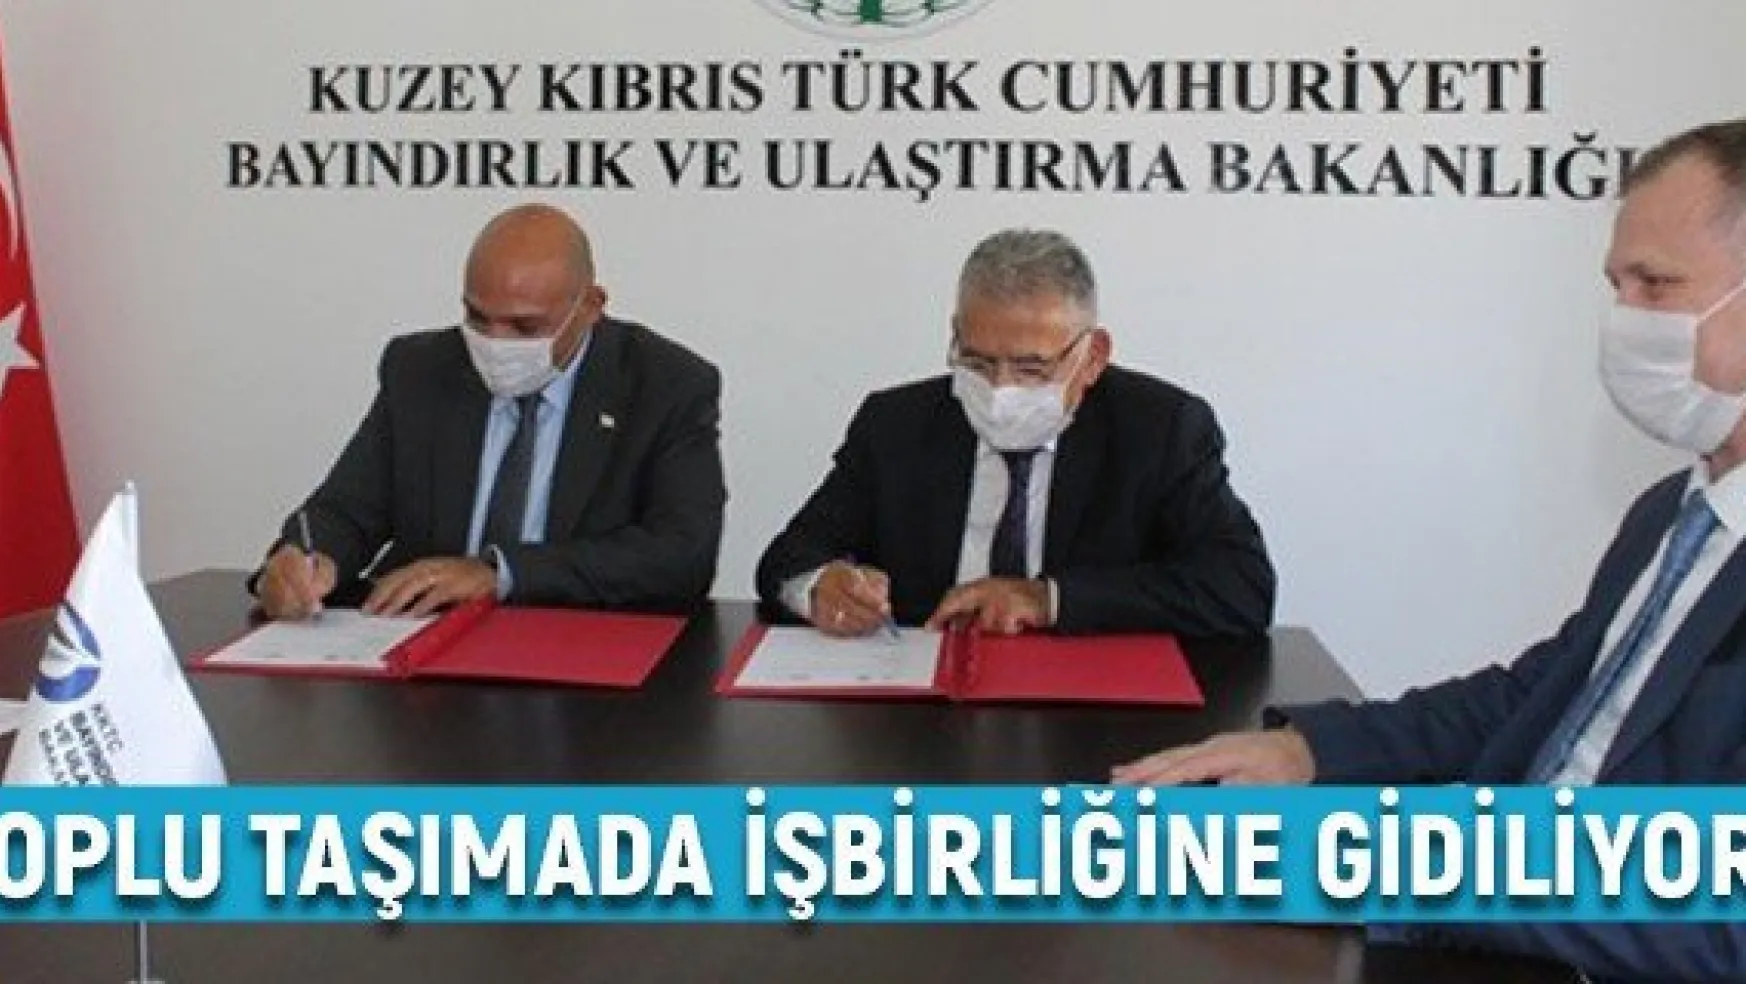 KKTC Ulaştırma Bakanlığı ile Kayseri Büyükşehir Belediyesi toplu taşımada işbirliğine gidiyor